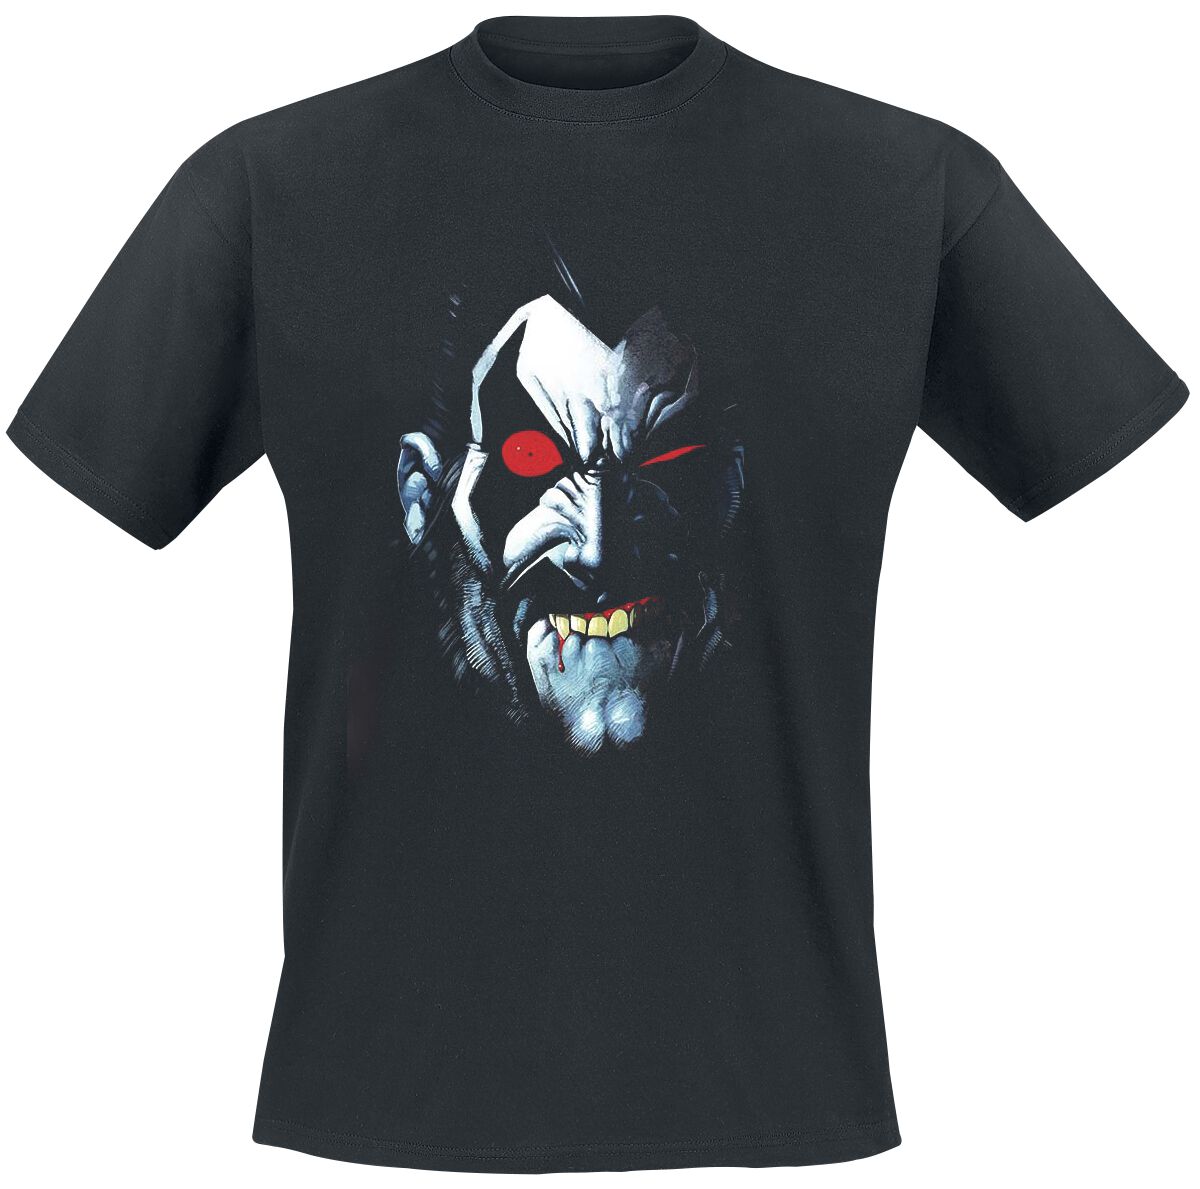 Justice League Lobo Portrait T-Shirt black